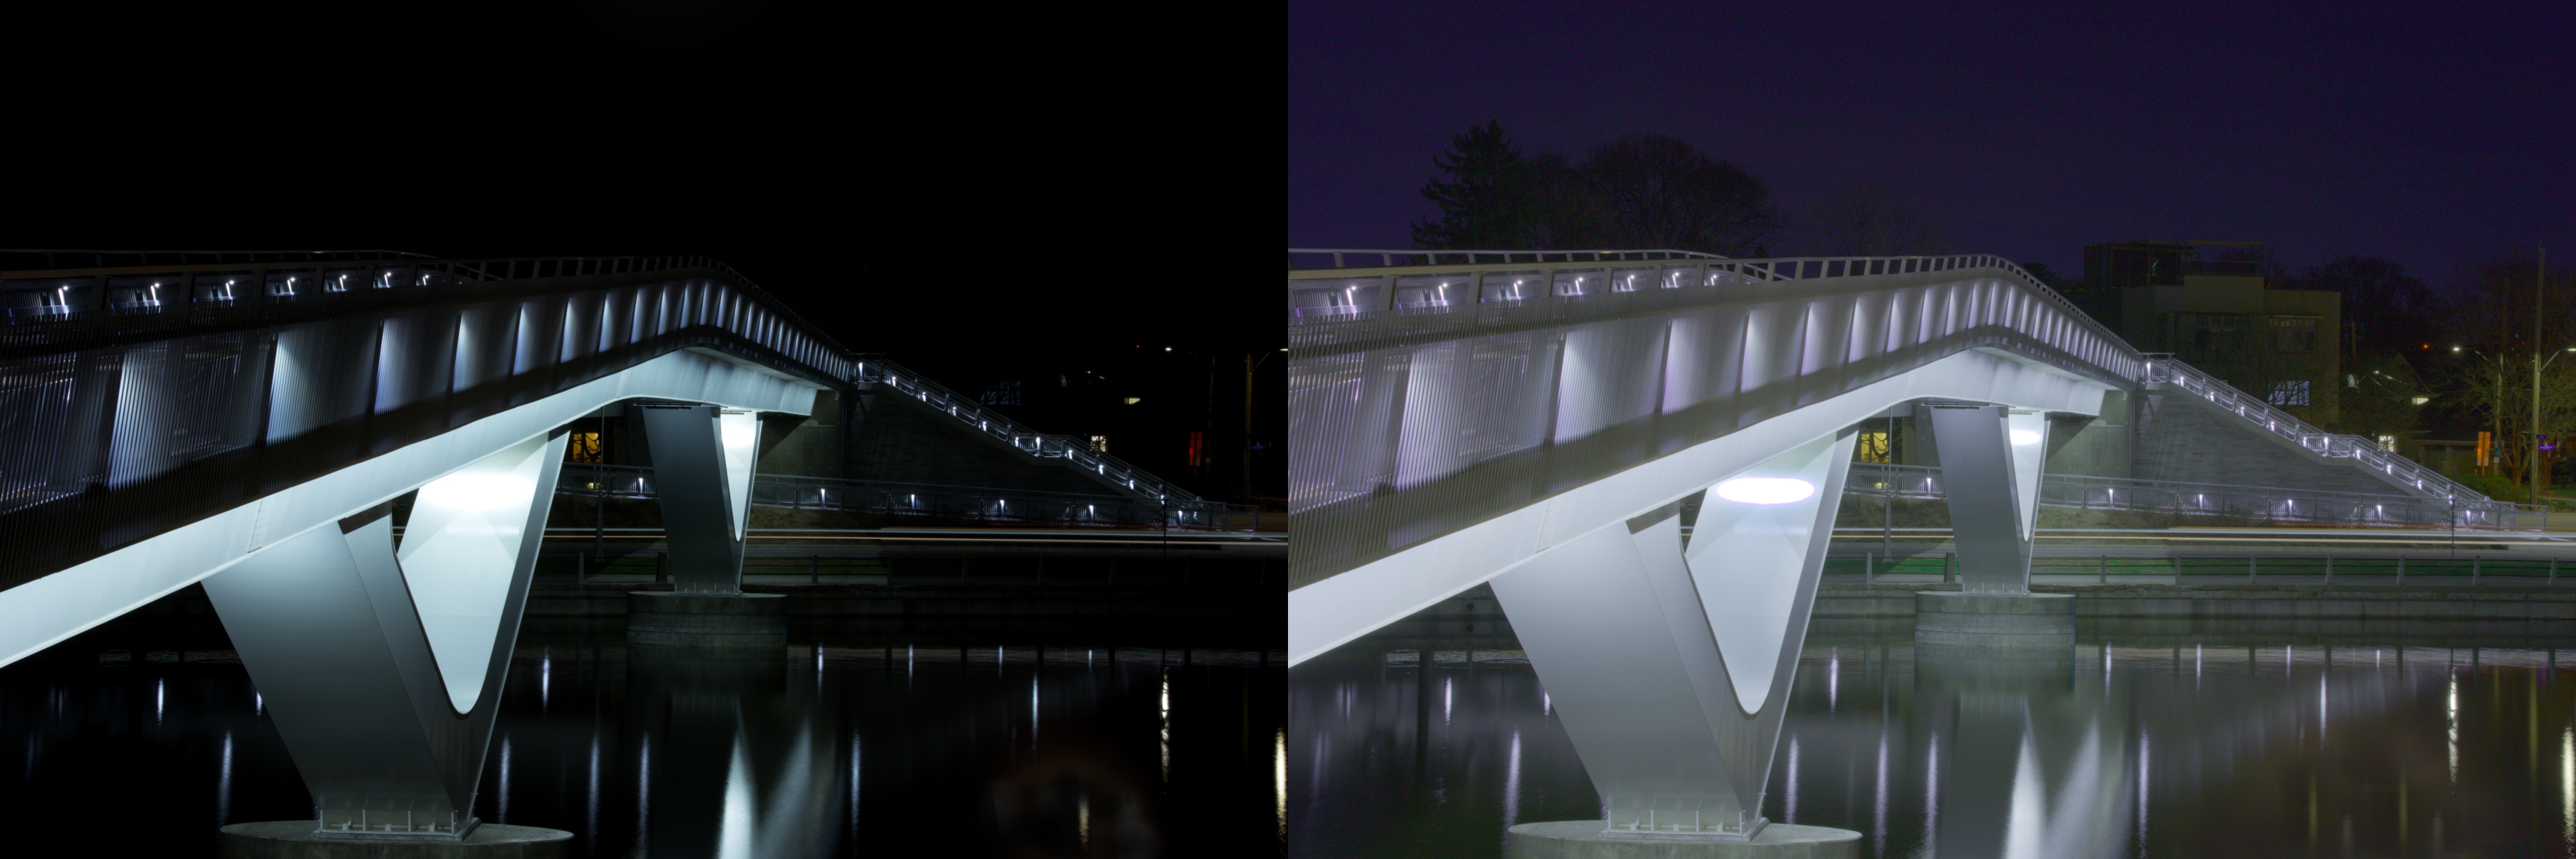 Bridge Composite by Bill Wright